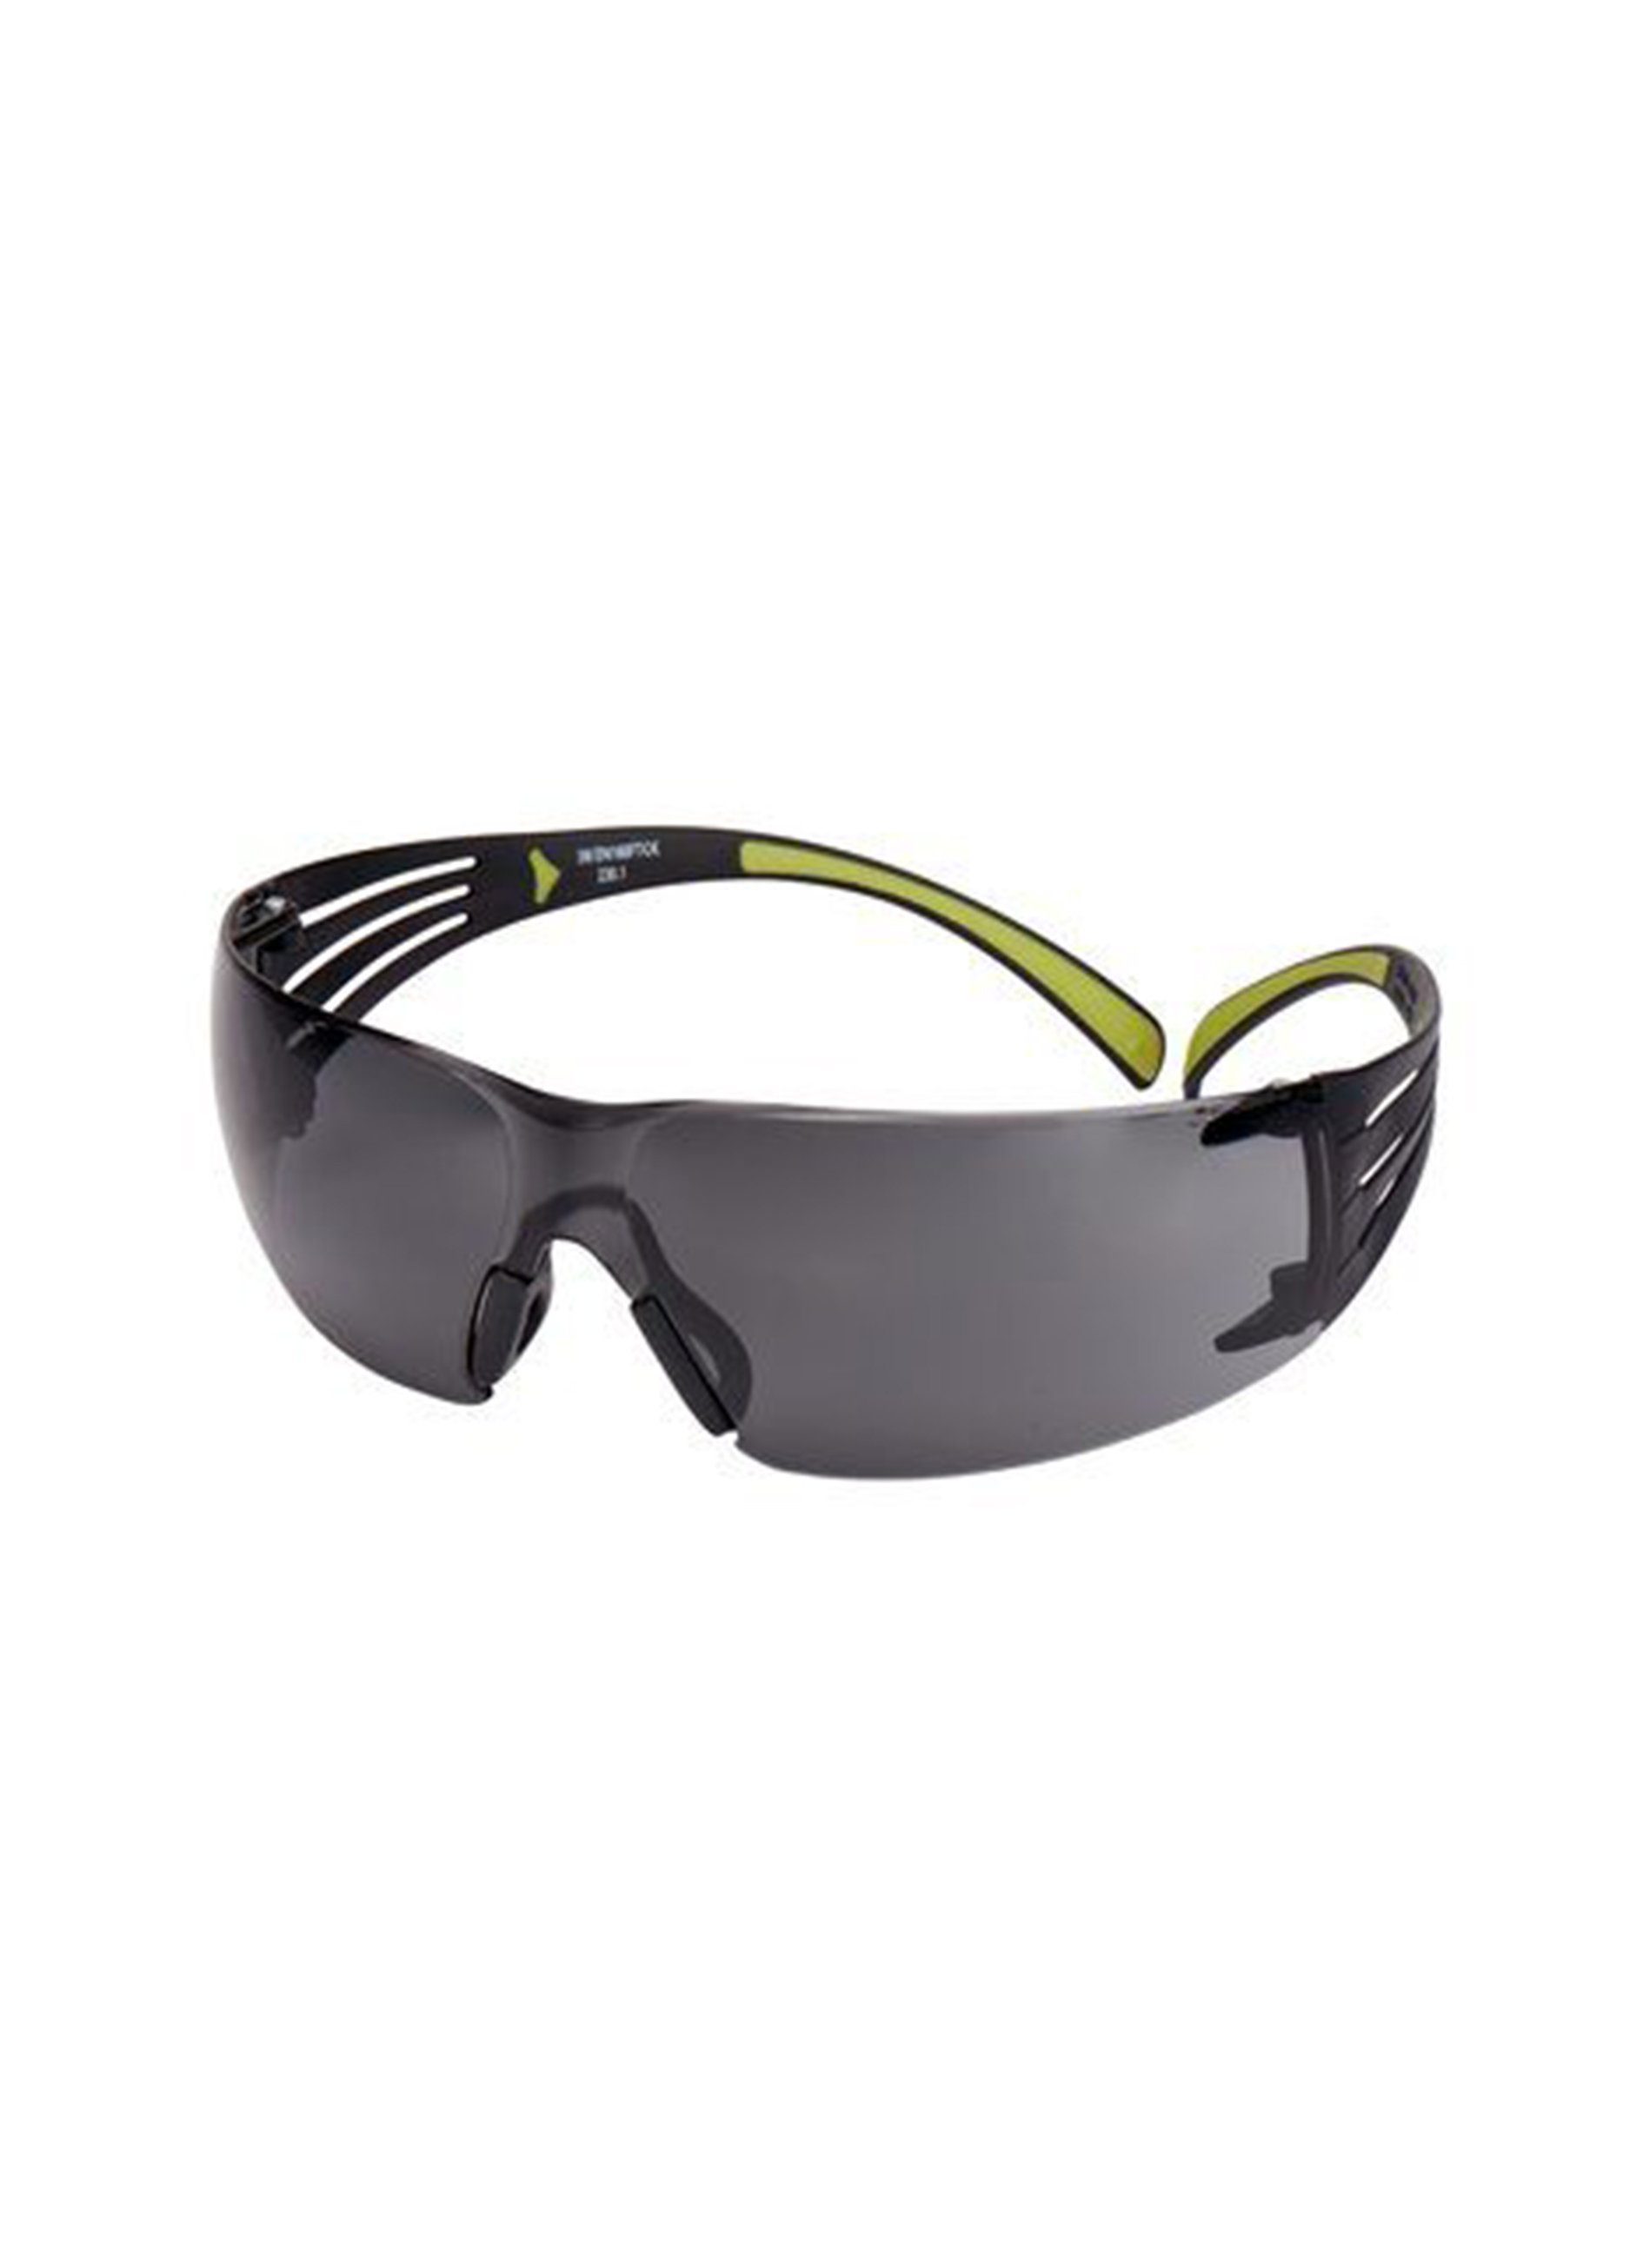 3M Brille 3M™ SecureFit™ 400 Schutzbrille, schwarz/grüne Bügel, Antikratz-/Antibeschlag-Beschichtung, graue Scheibe, bietet hervorragenden Schutz sowie ein gutes Sichtfeld, sehr leicht (19g)